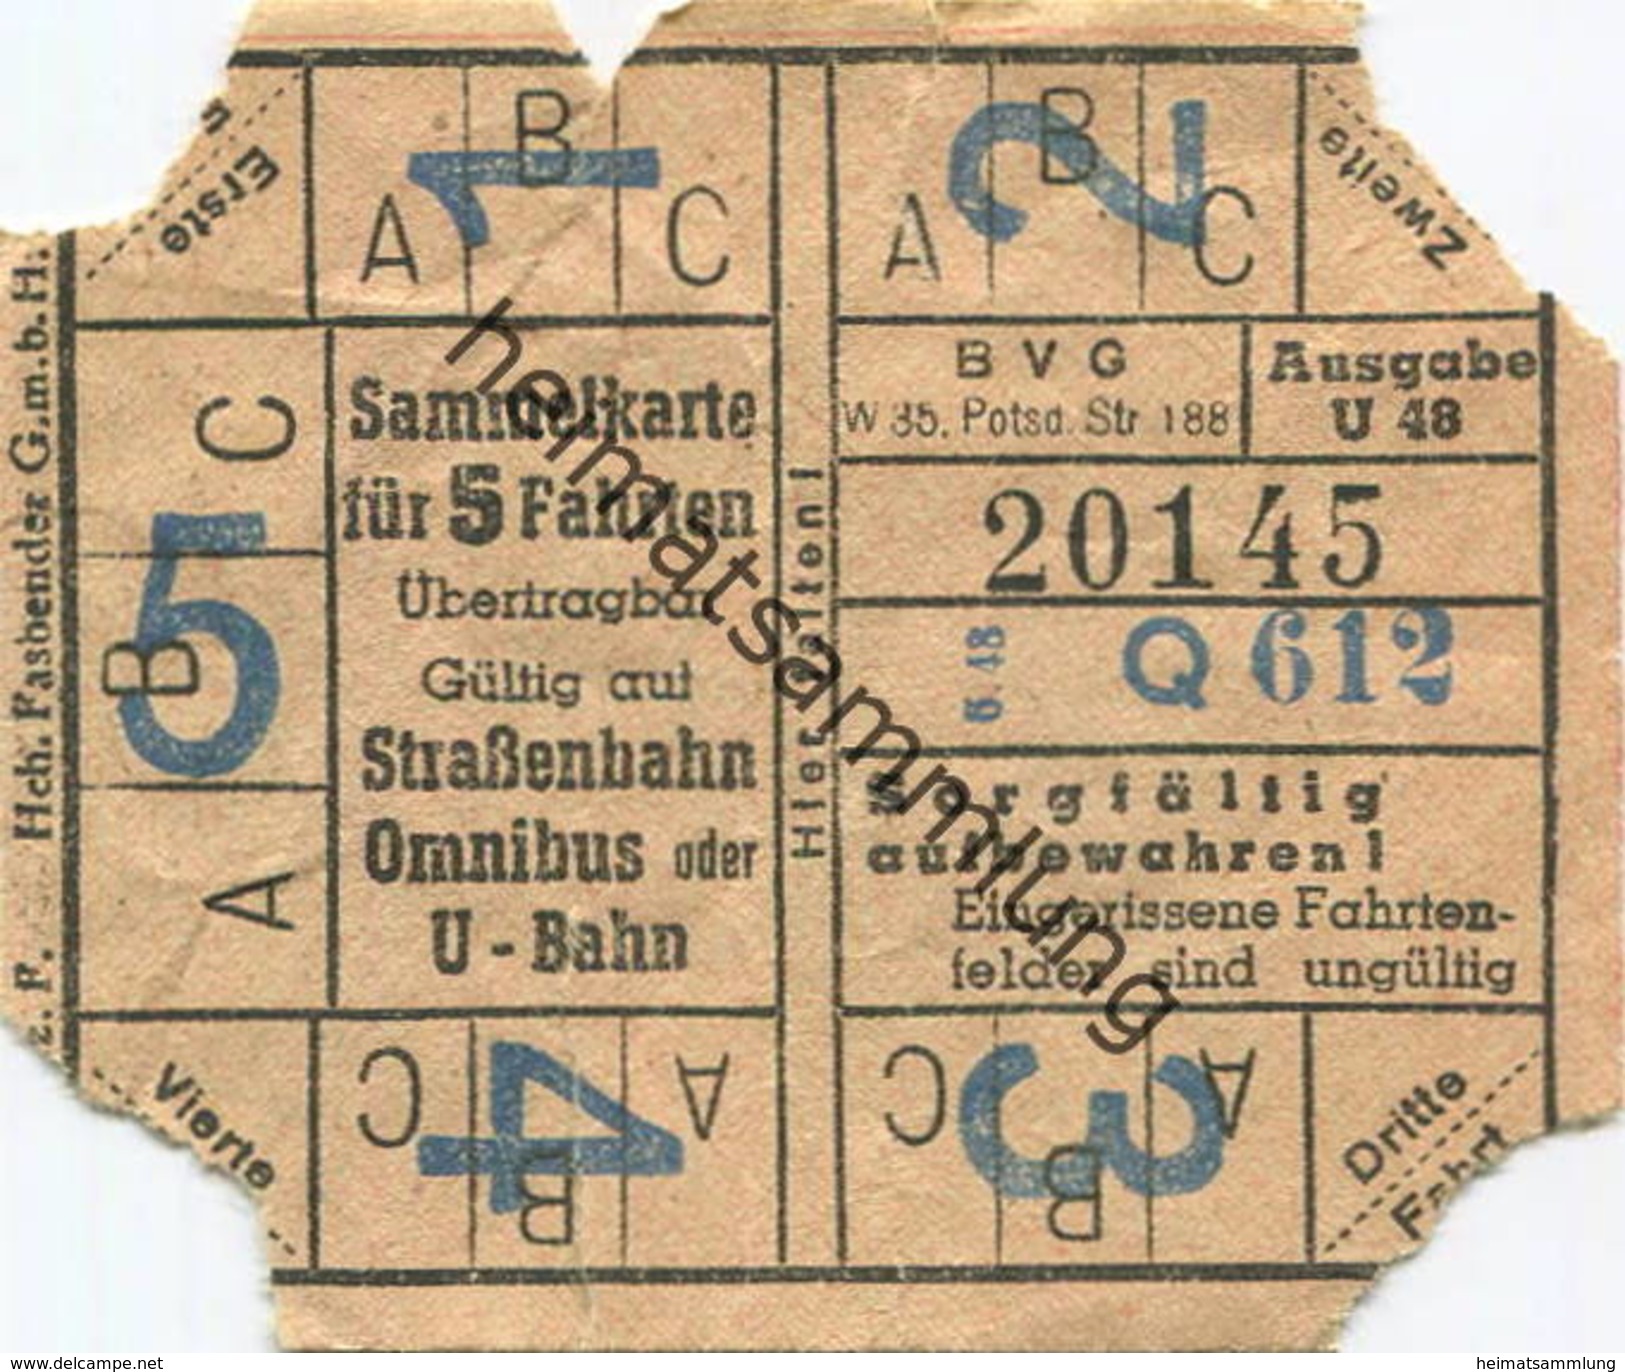 Deutschland - Berlin - BVG - Sammelkarte Für 5 Fahrten 1948 - Gültig Auf Strassenbahn Omnibus Oder U-Bahn - Europa